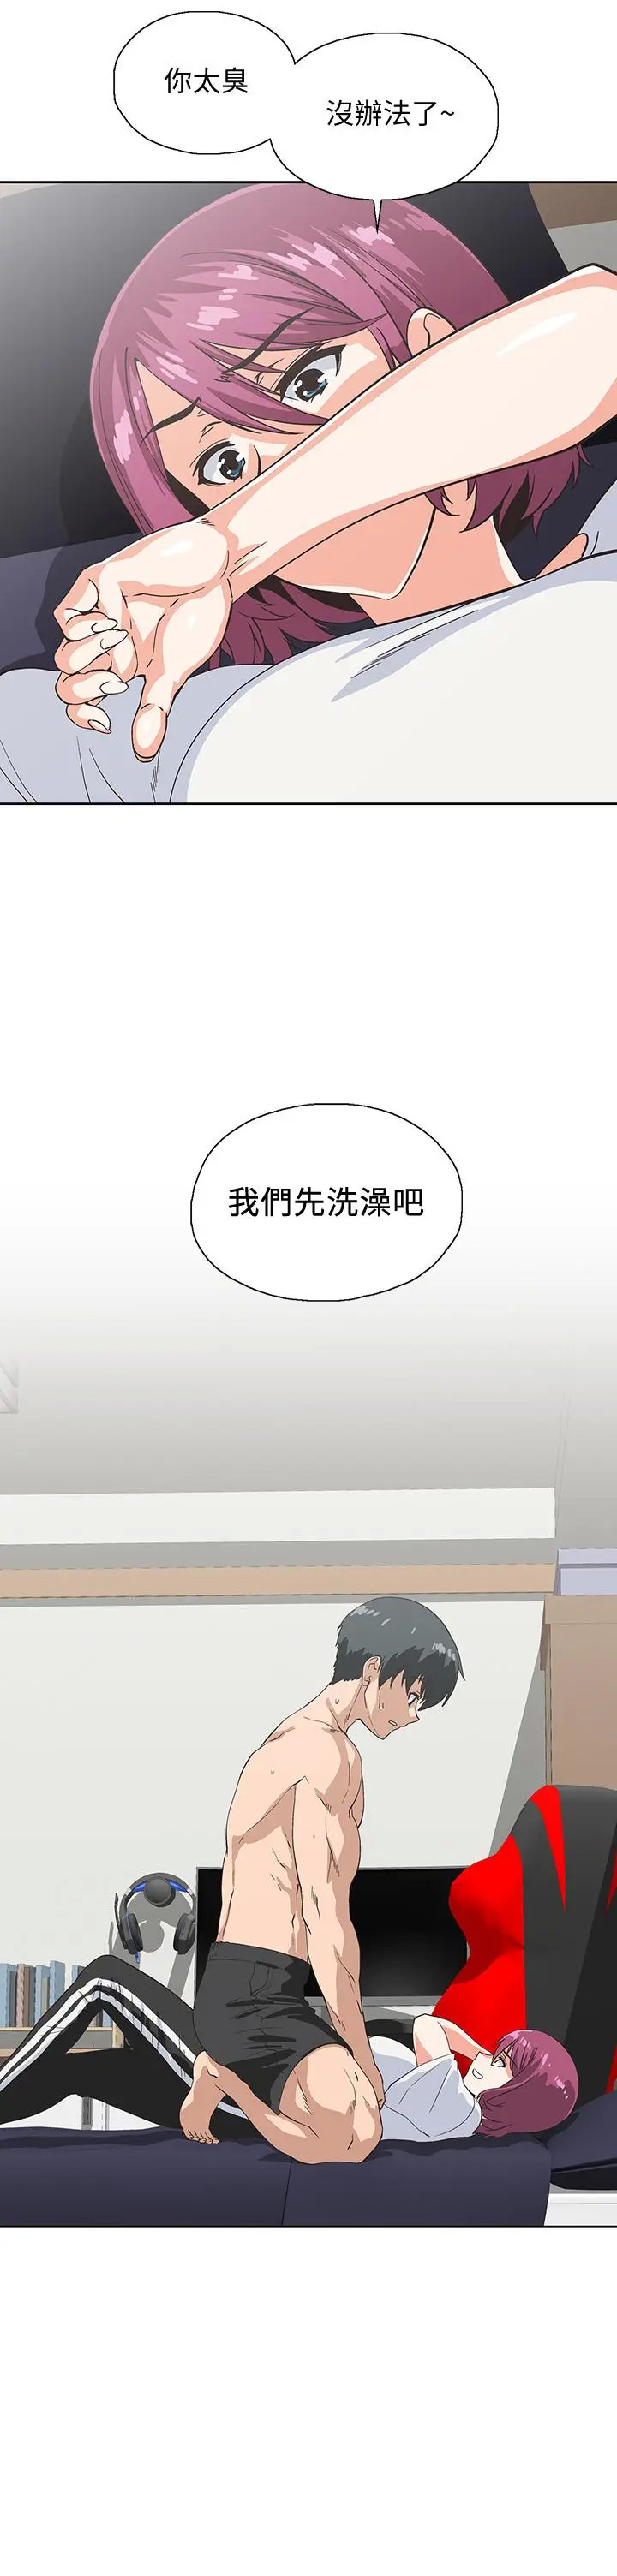 《梦幻速食店》漫画 第21话-帮我搓泡泡